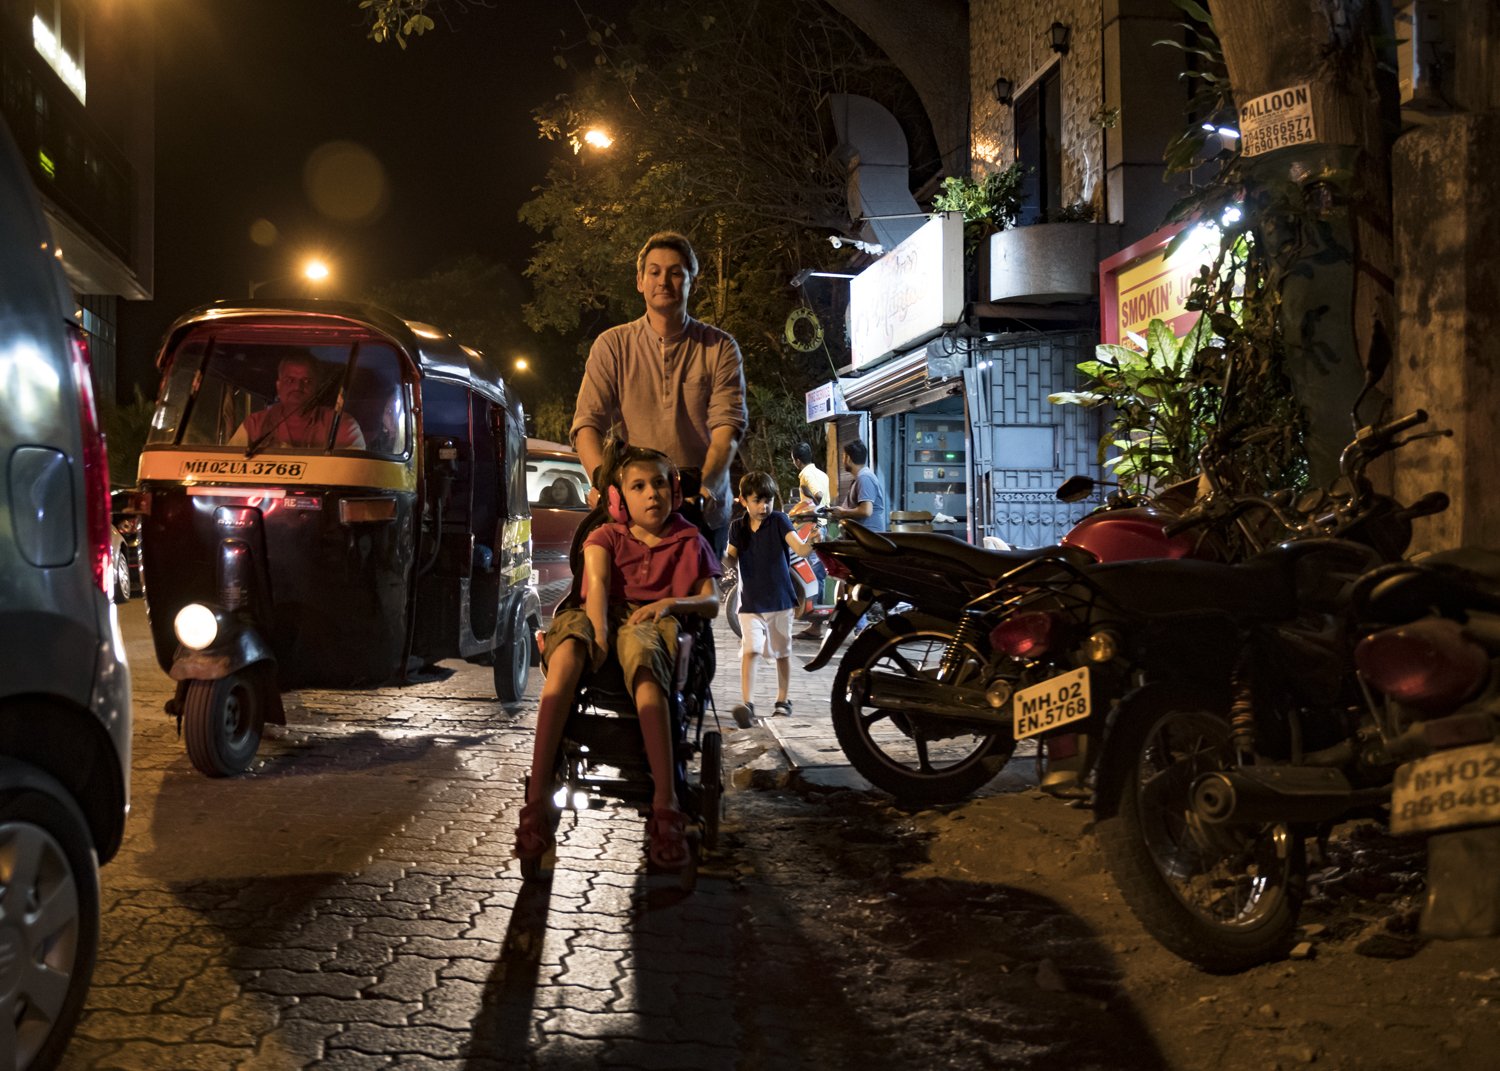 32. The family walking alongside a busy street in Mumbai | NIK_1566.jpg